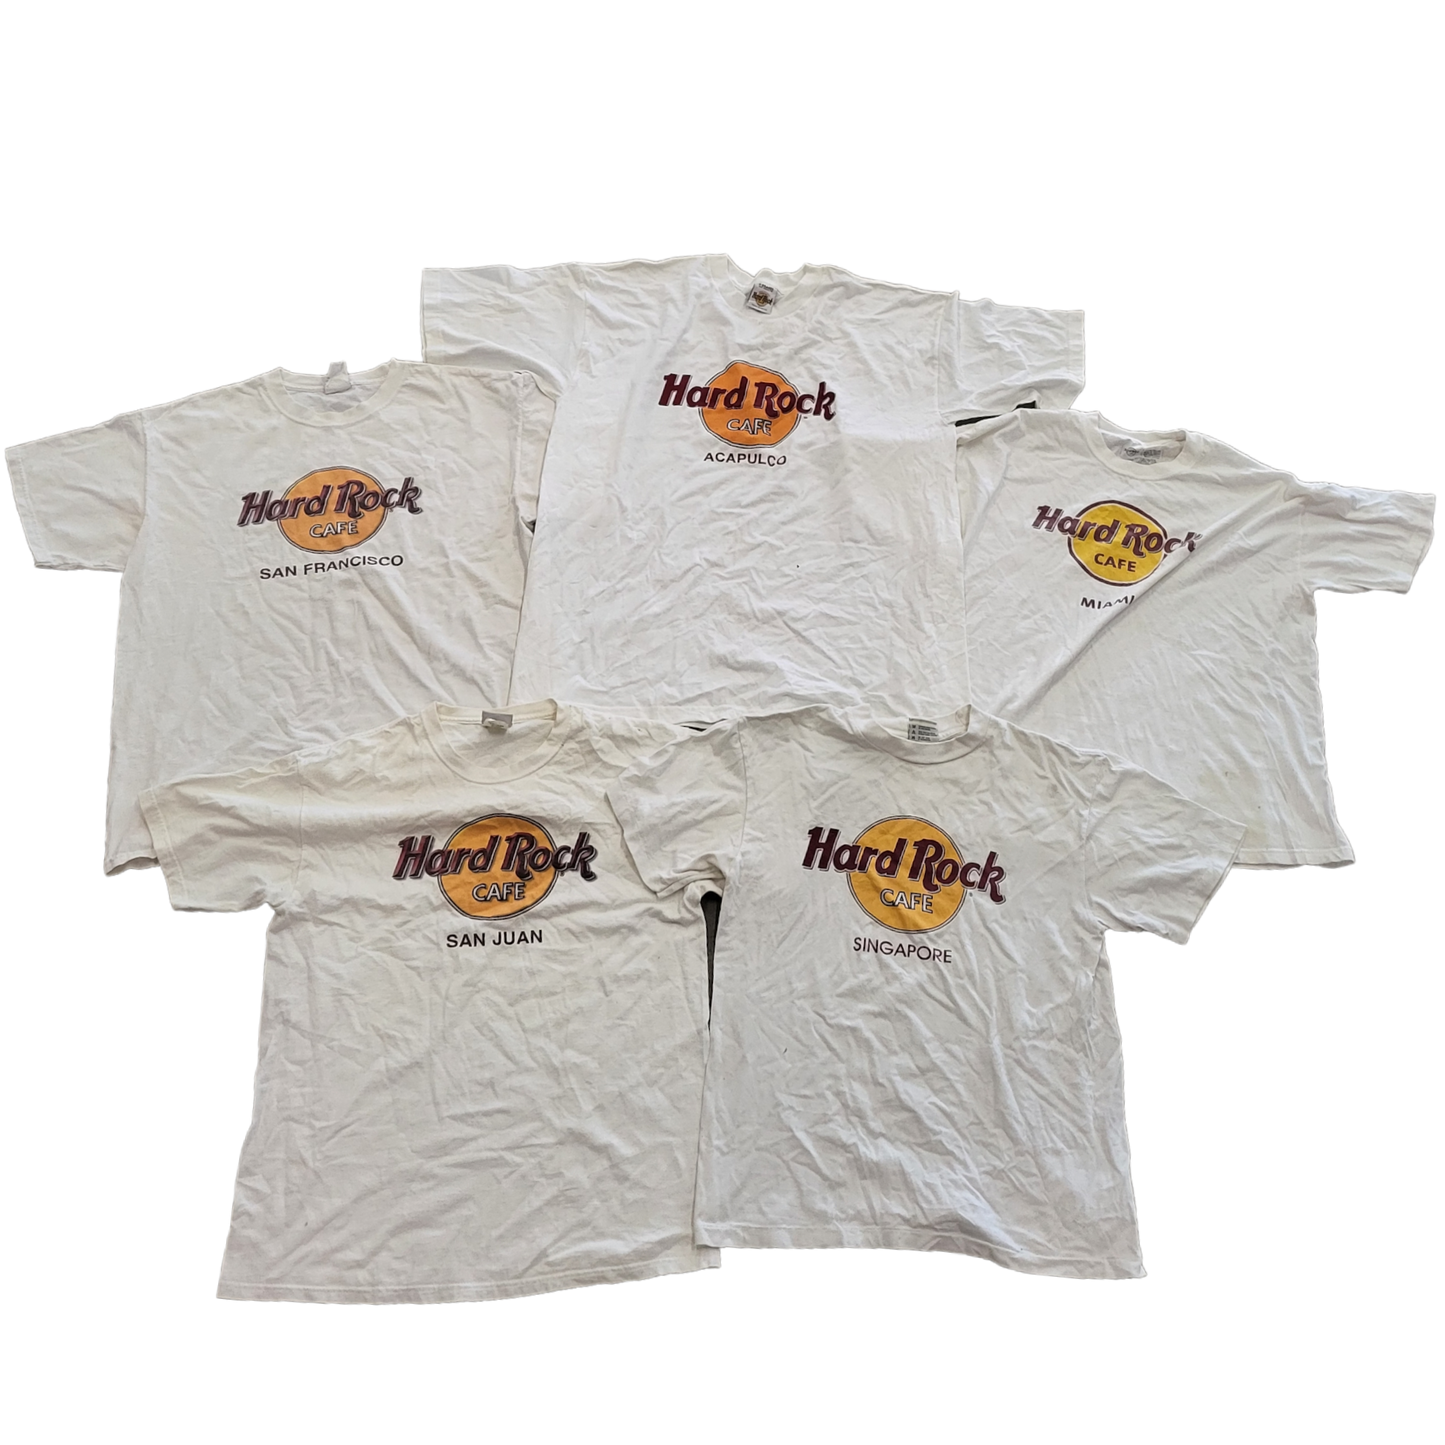 Hard Rock T-Shirts